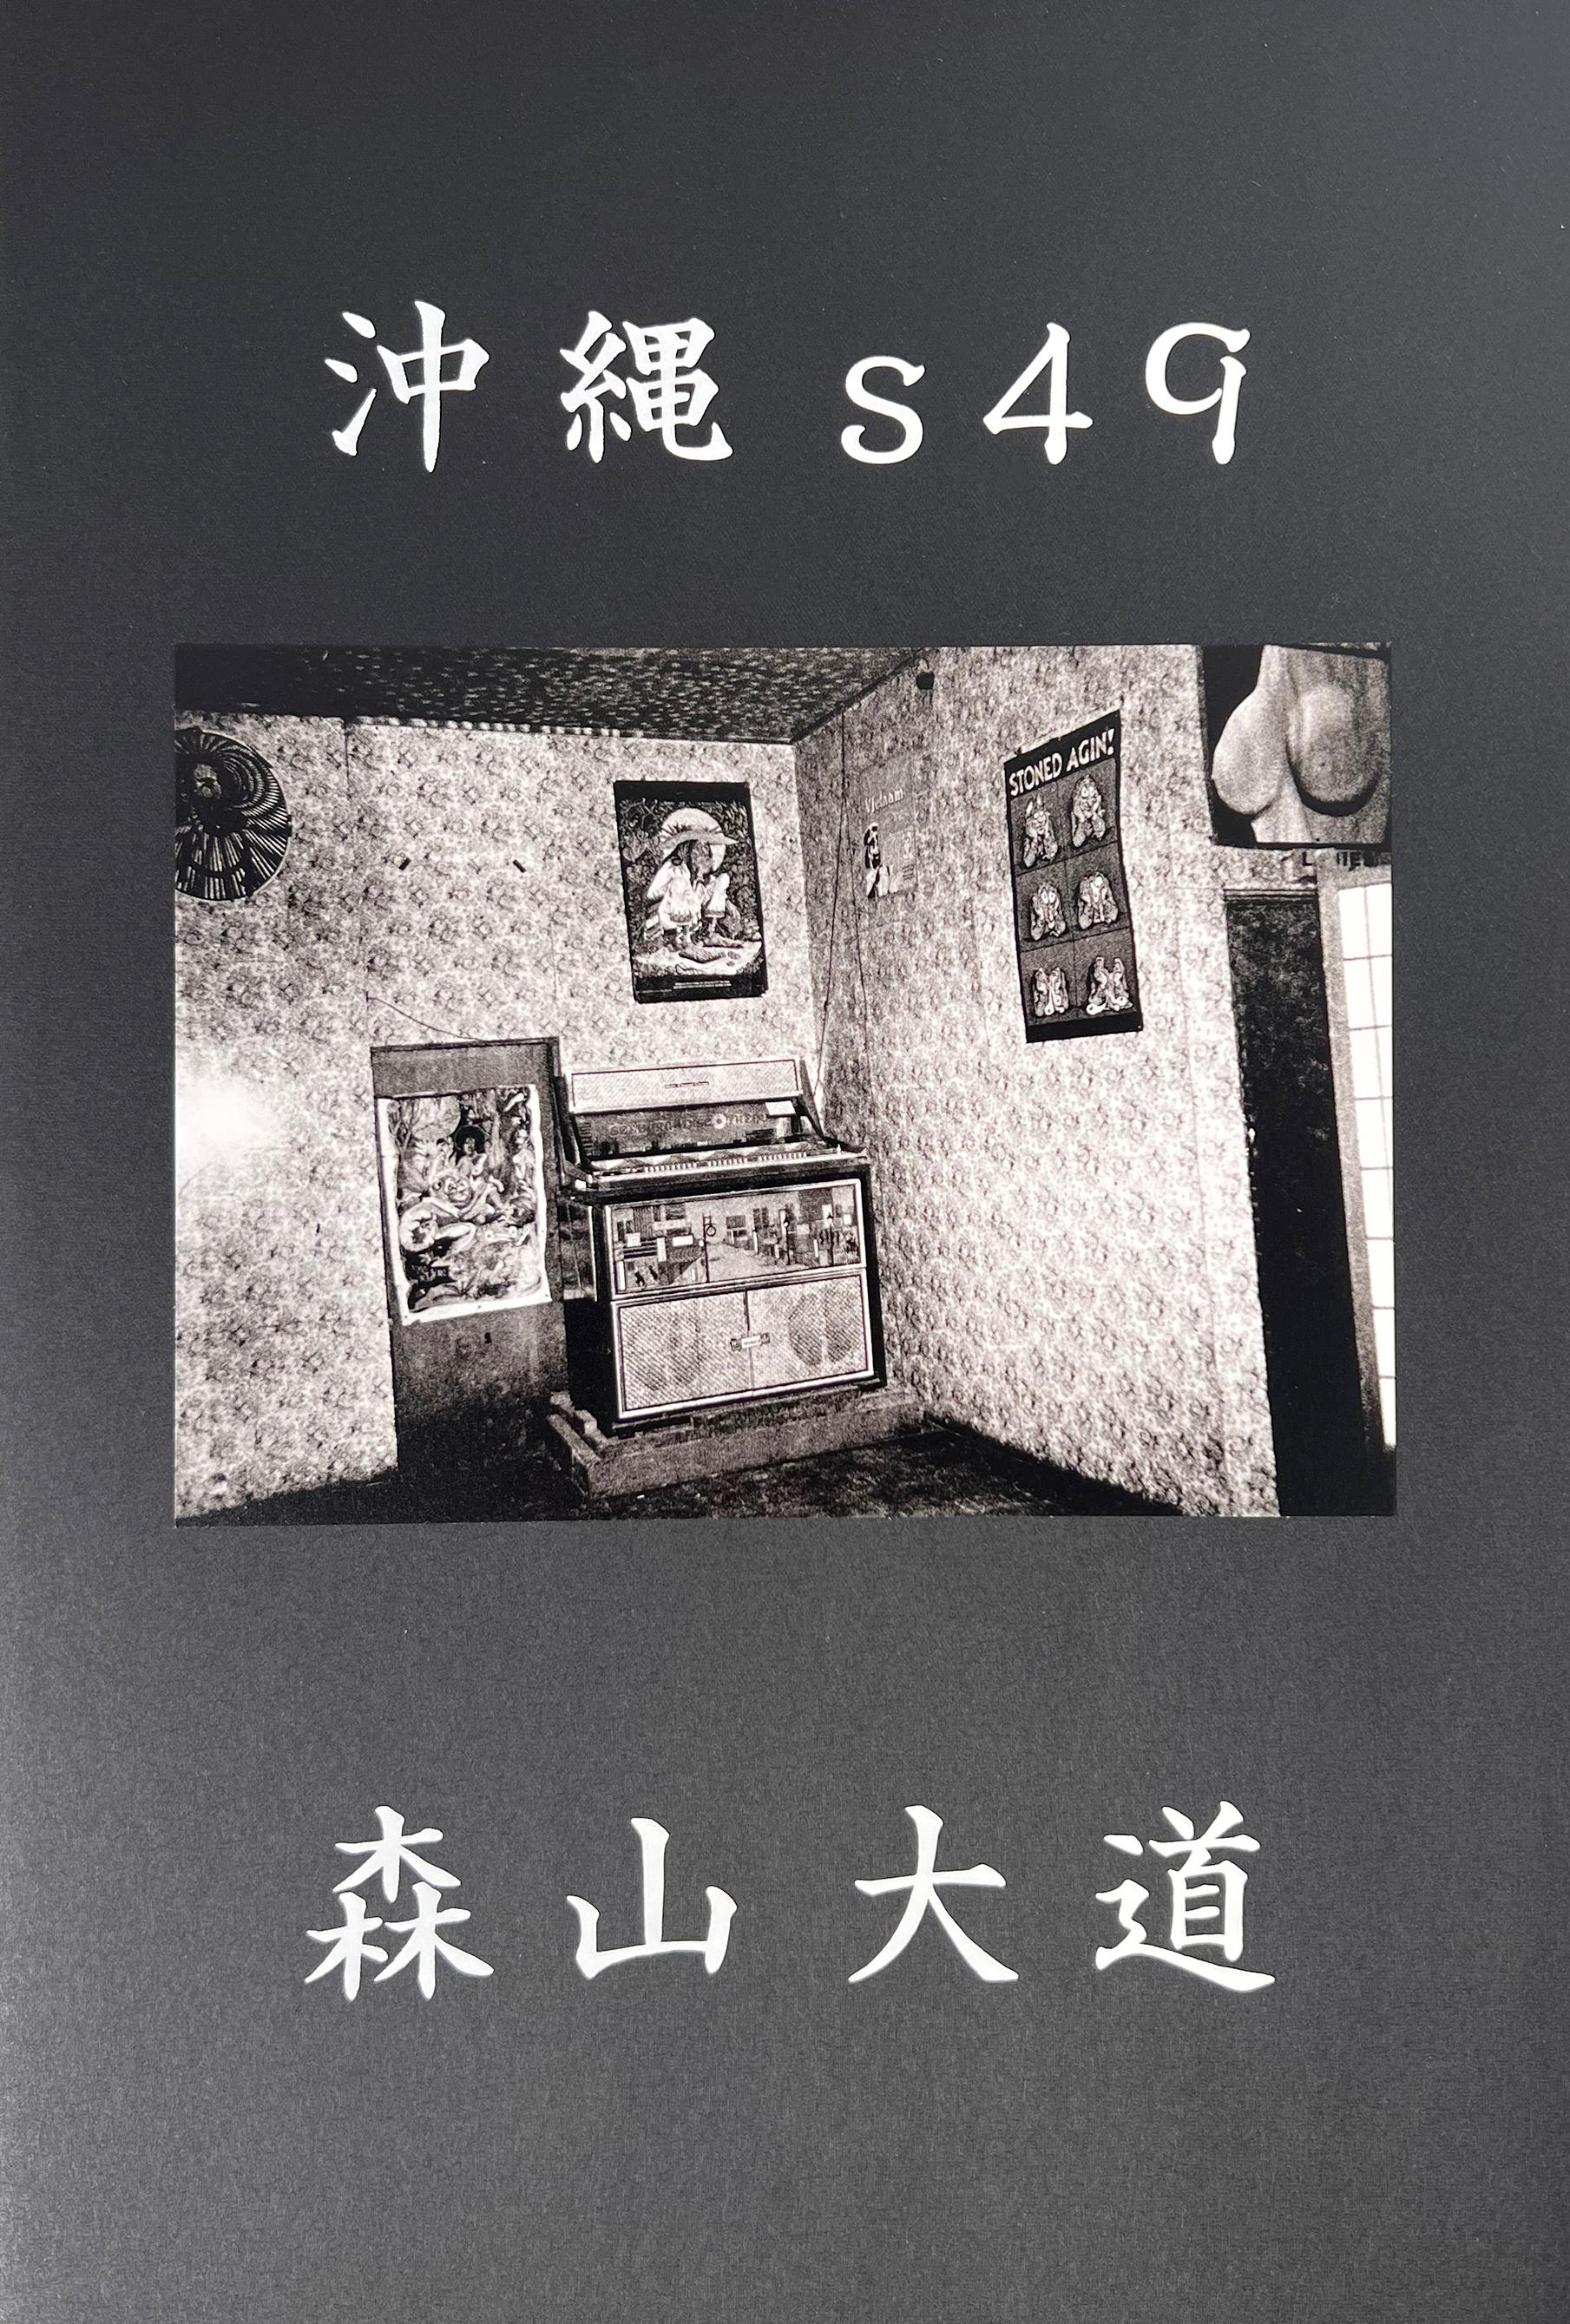 Livre d'artiste signé de Daido Moriyama : Daido Moriyama Okinawa s49 :

Couverture souple. 2020. Environ 36 pages ; avec 17 illustrations en noir et blanc. Dimensions : 9,5 x 14,25 pouces : 9.5 x 14.25 pouces.

Signé à la main par Moriyama sur la